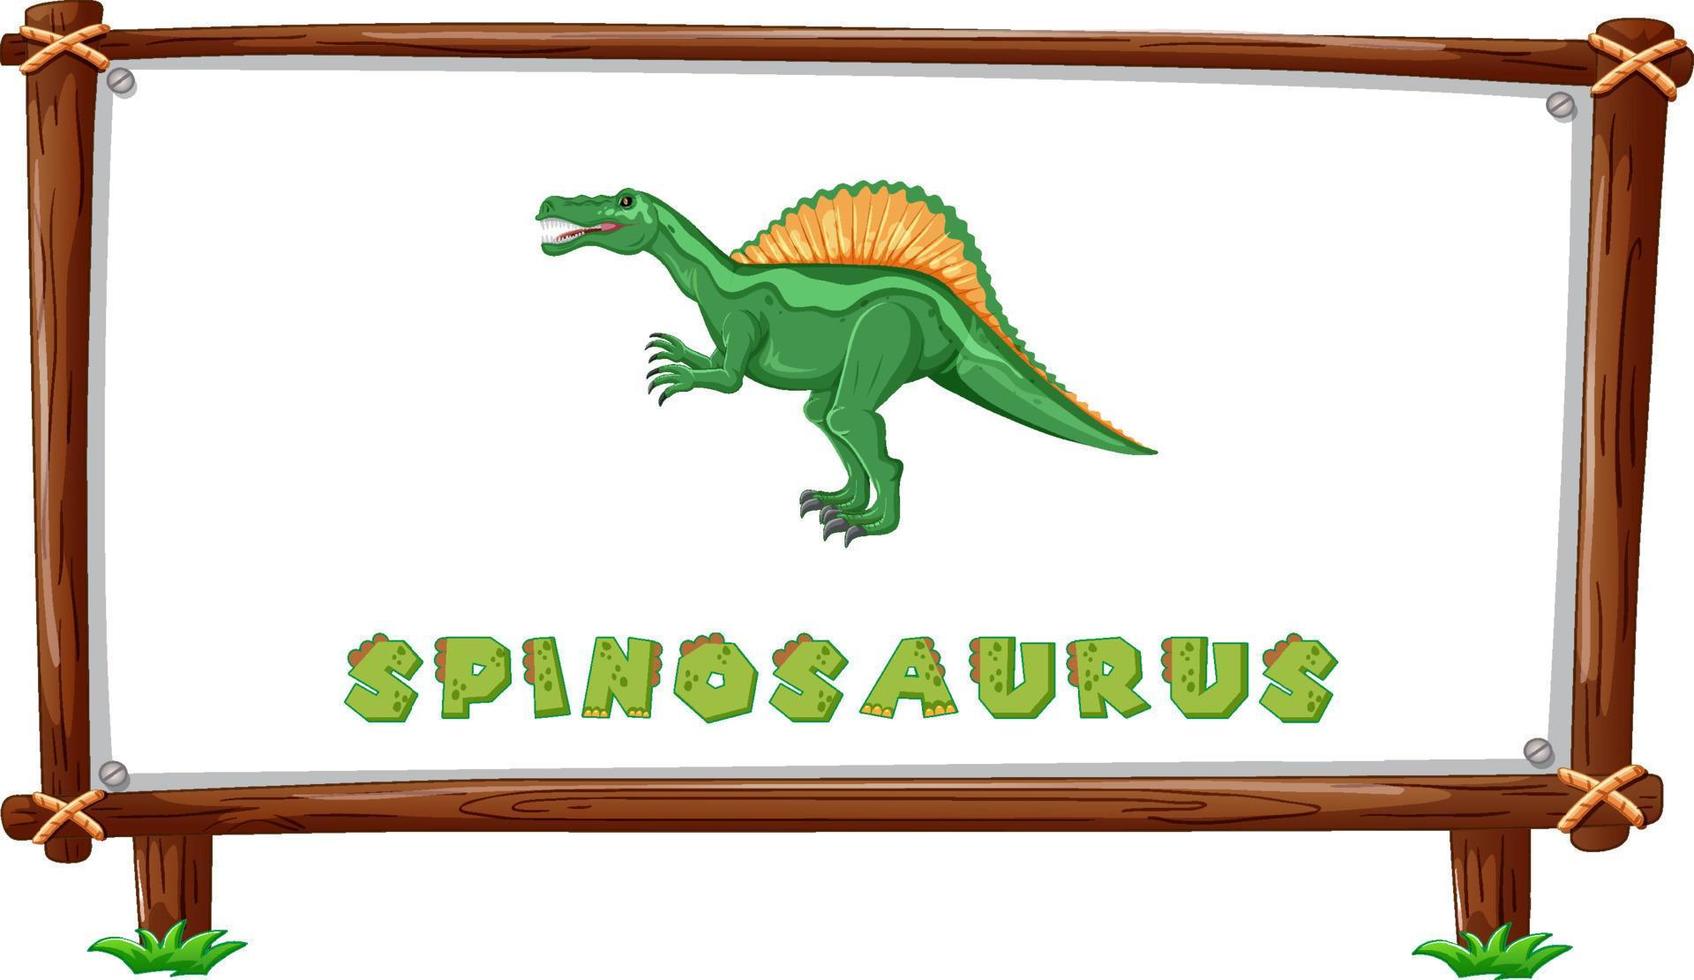 modèle de cadre avec dinosaures et texte spinosaurus à l'intérieur vecteur